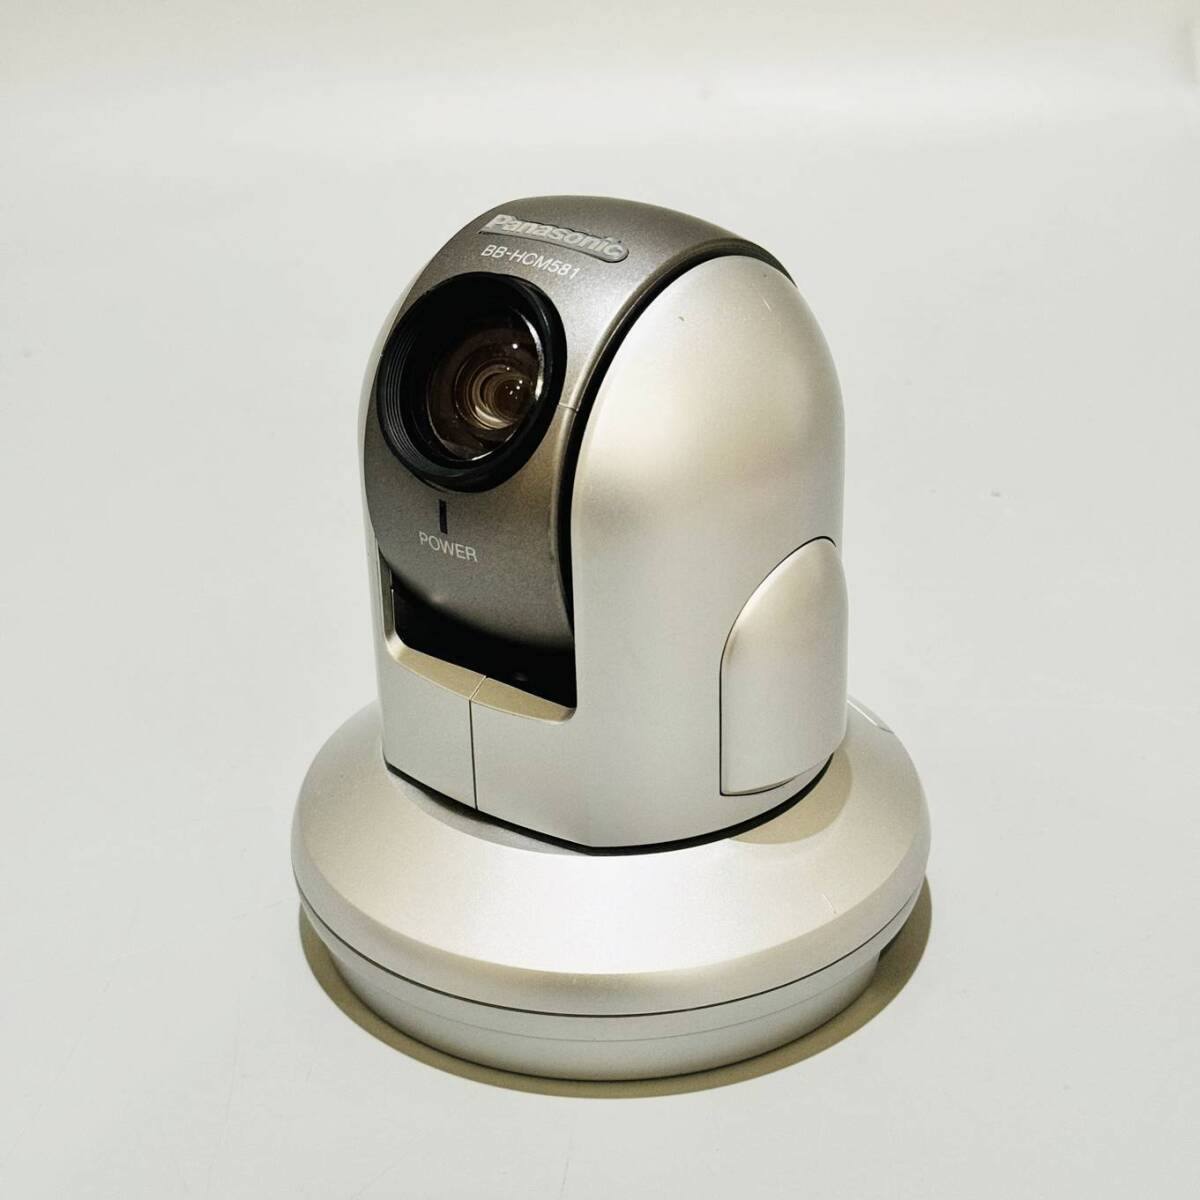 .HG055 1 иен старт прекрасный товар чистка settled рабочее состояние подтверждено Panasonic Panasonic сеть камера BB-HCM581 камера системы безопасности ..